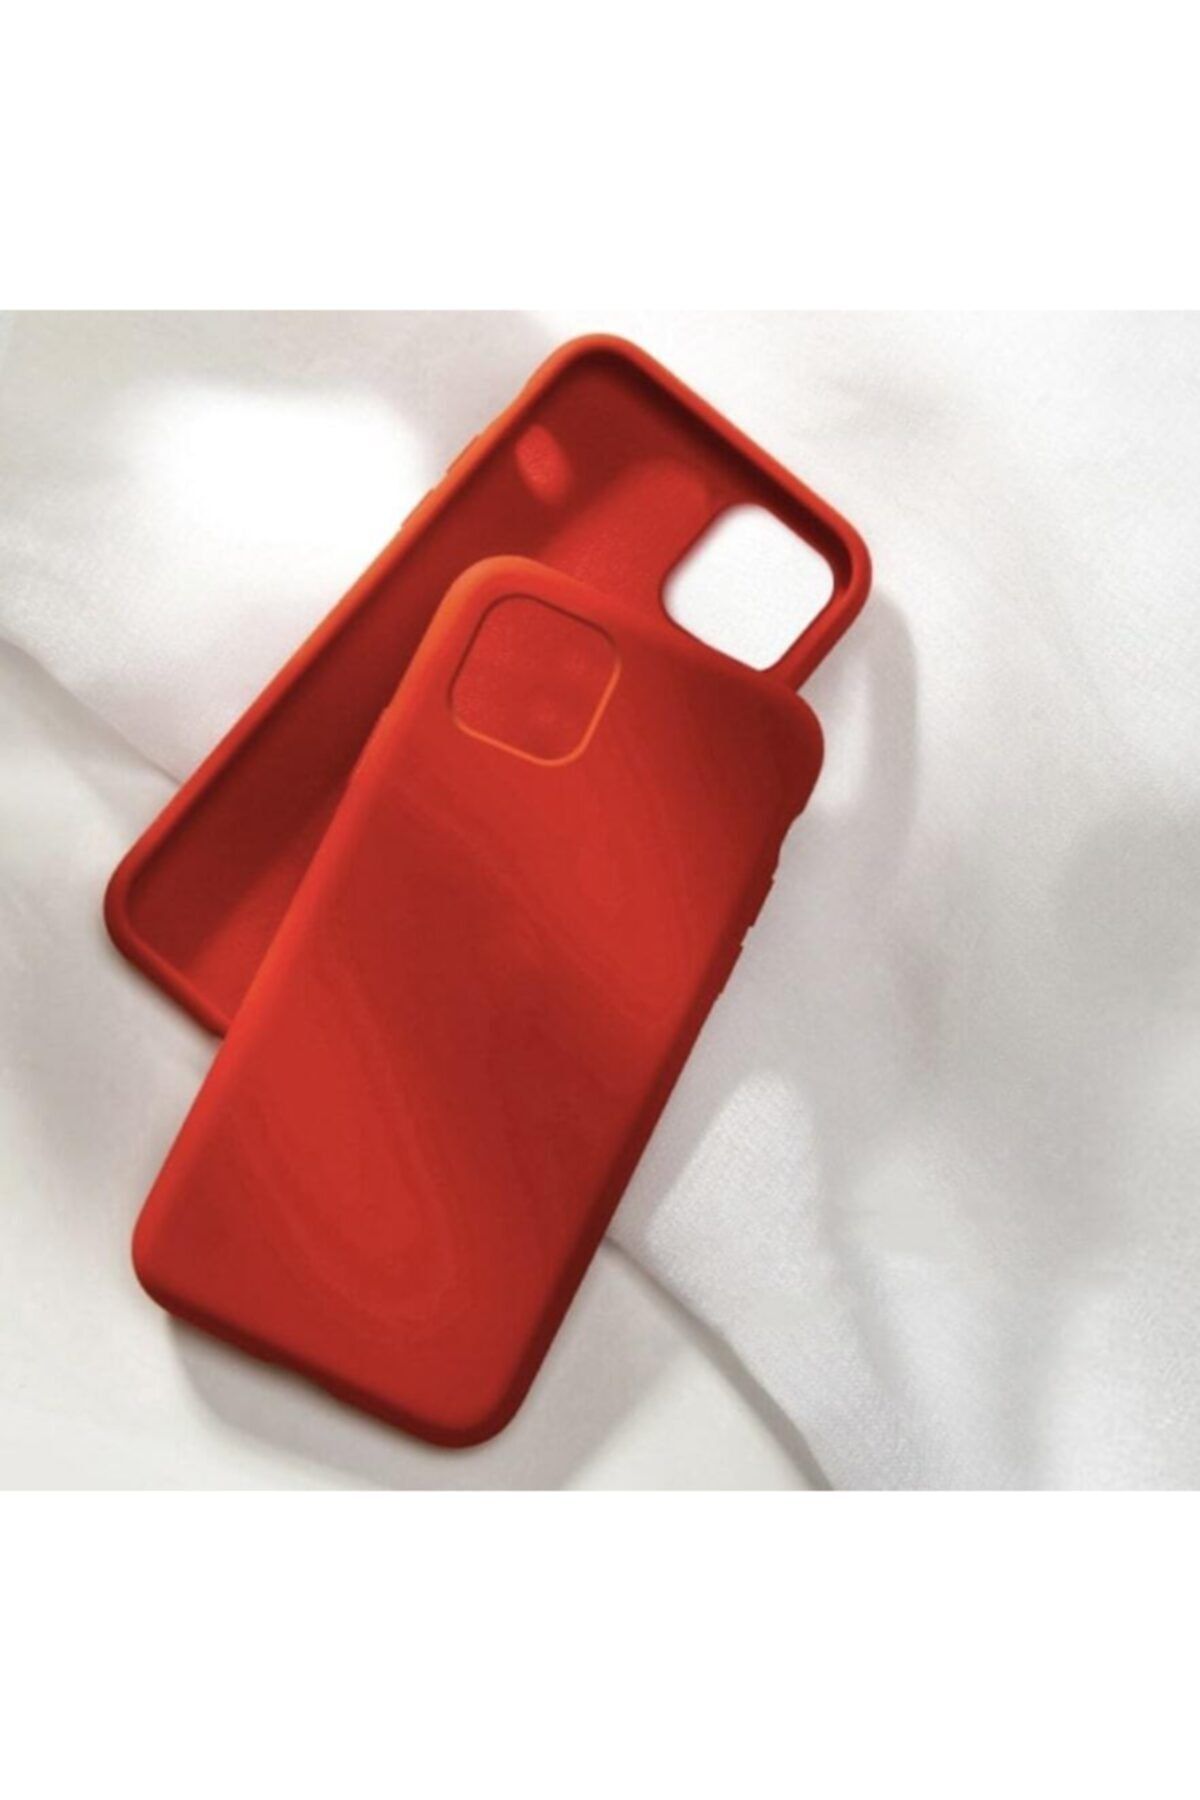 Teknoloji Gelsin Iphone 11 Pro Premium Lansman Içi Kadife Silikon Kılıf Iphone 11pro - Kırmızı